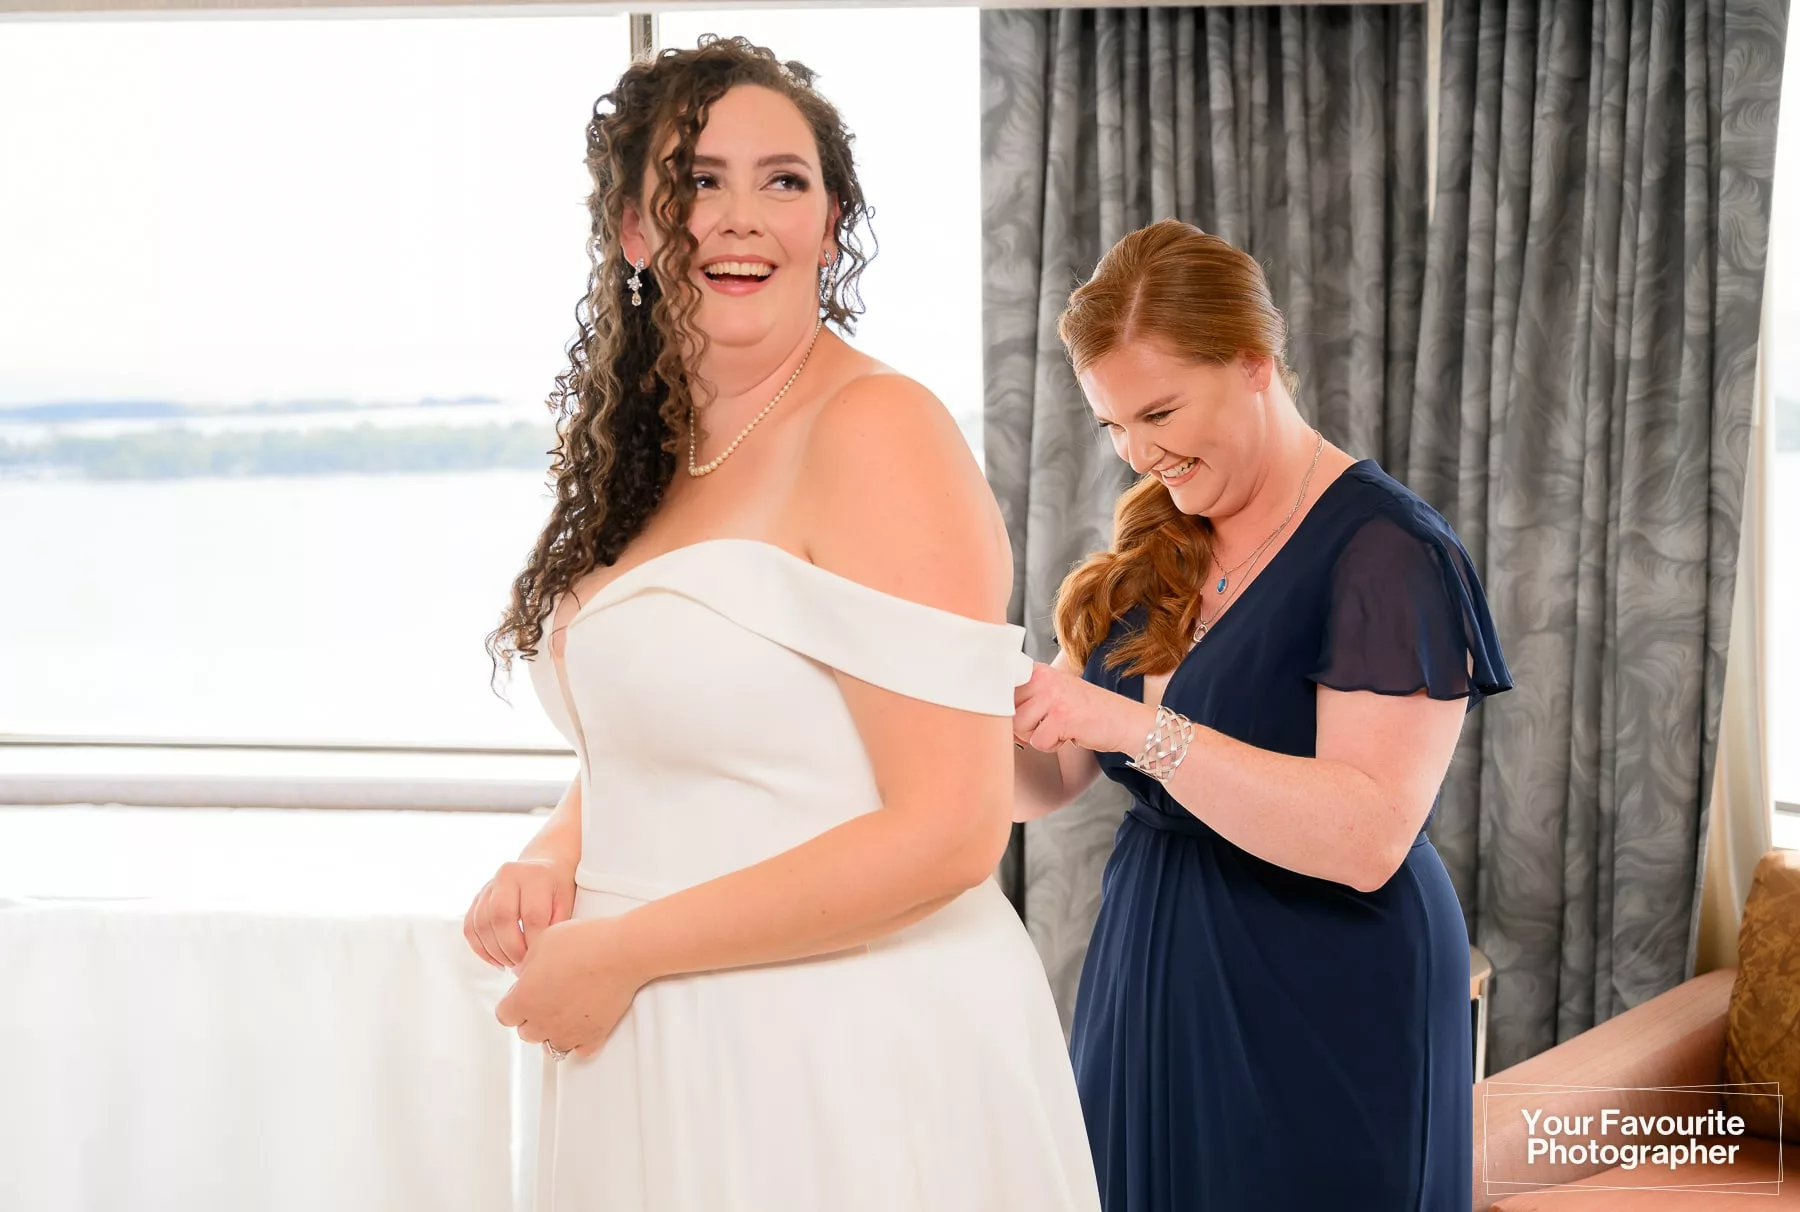 Bridesmaid helping bride fasten her wedding dress